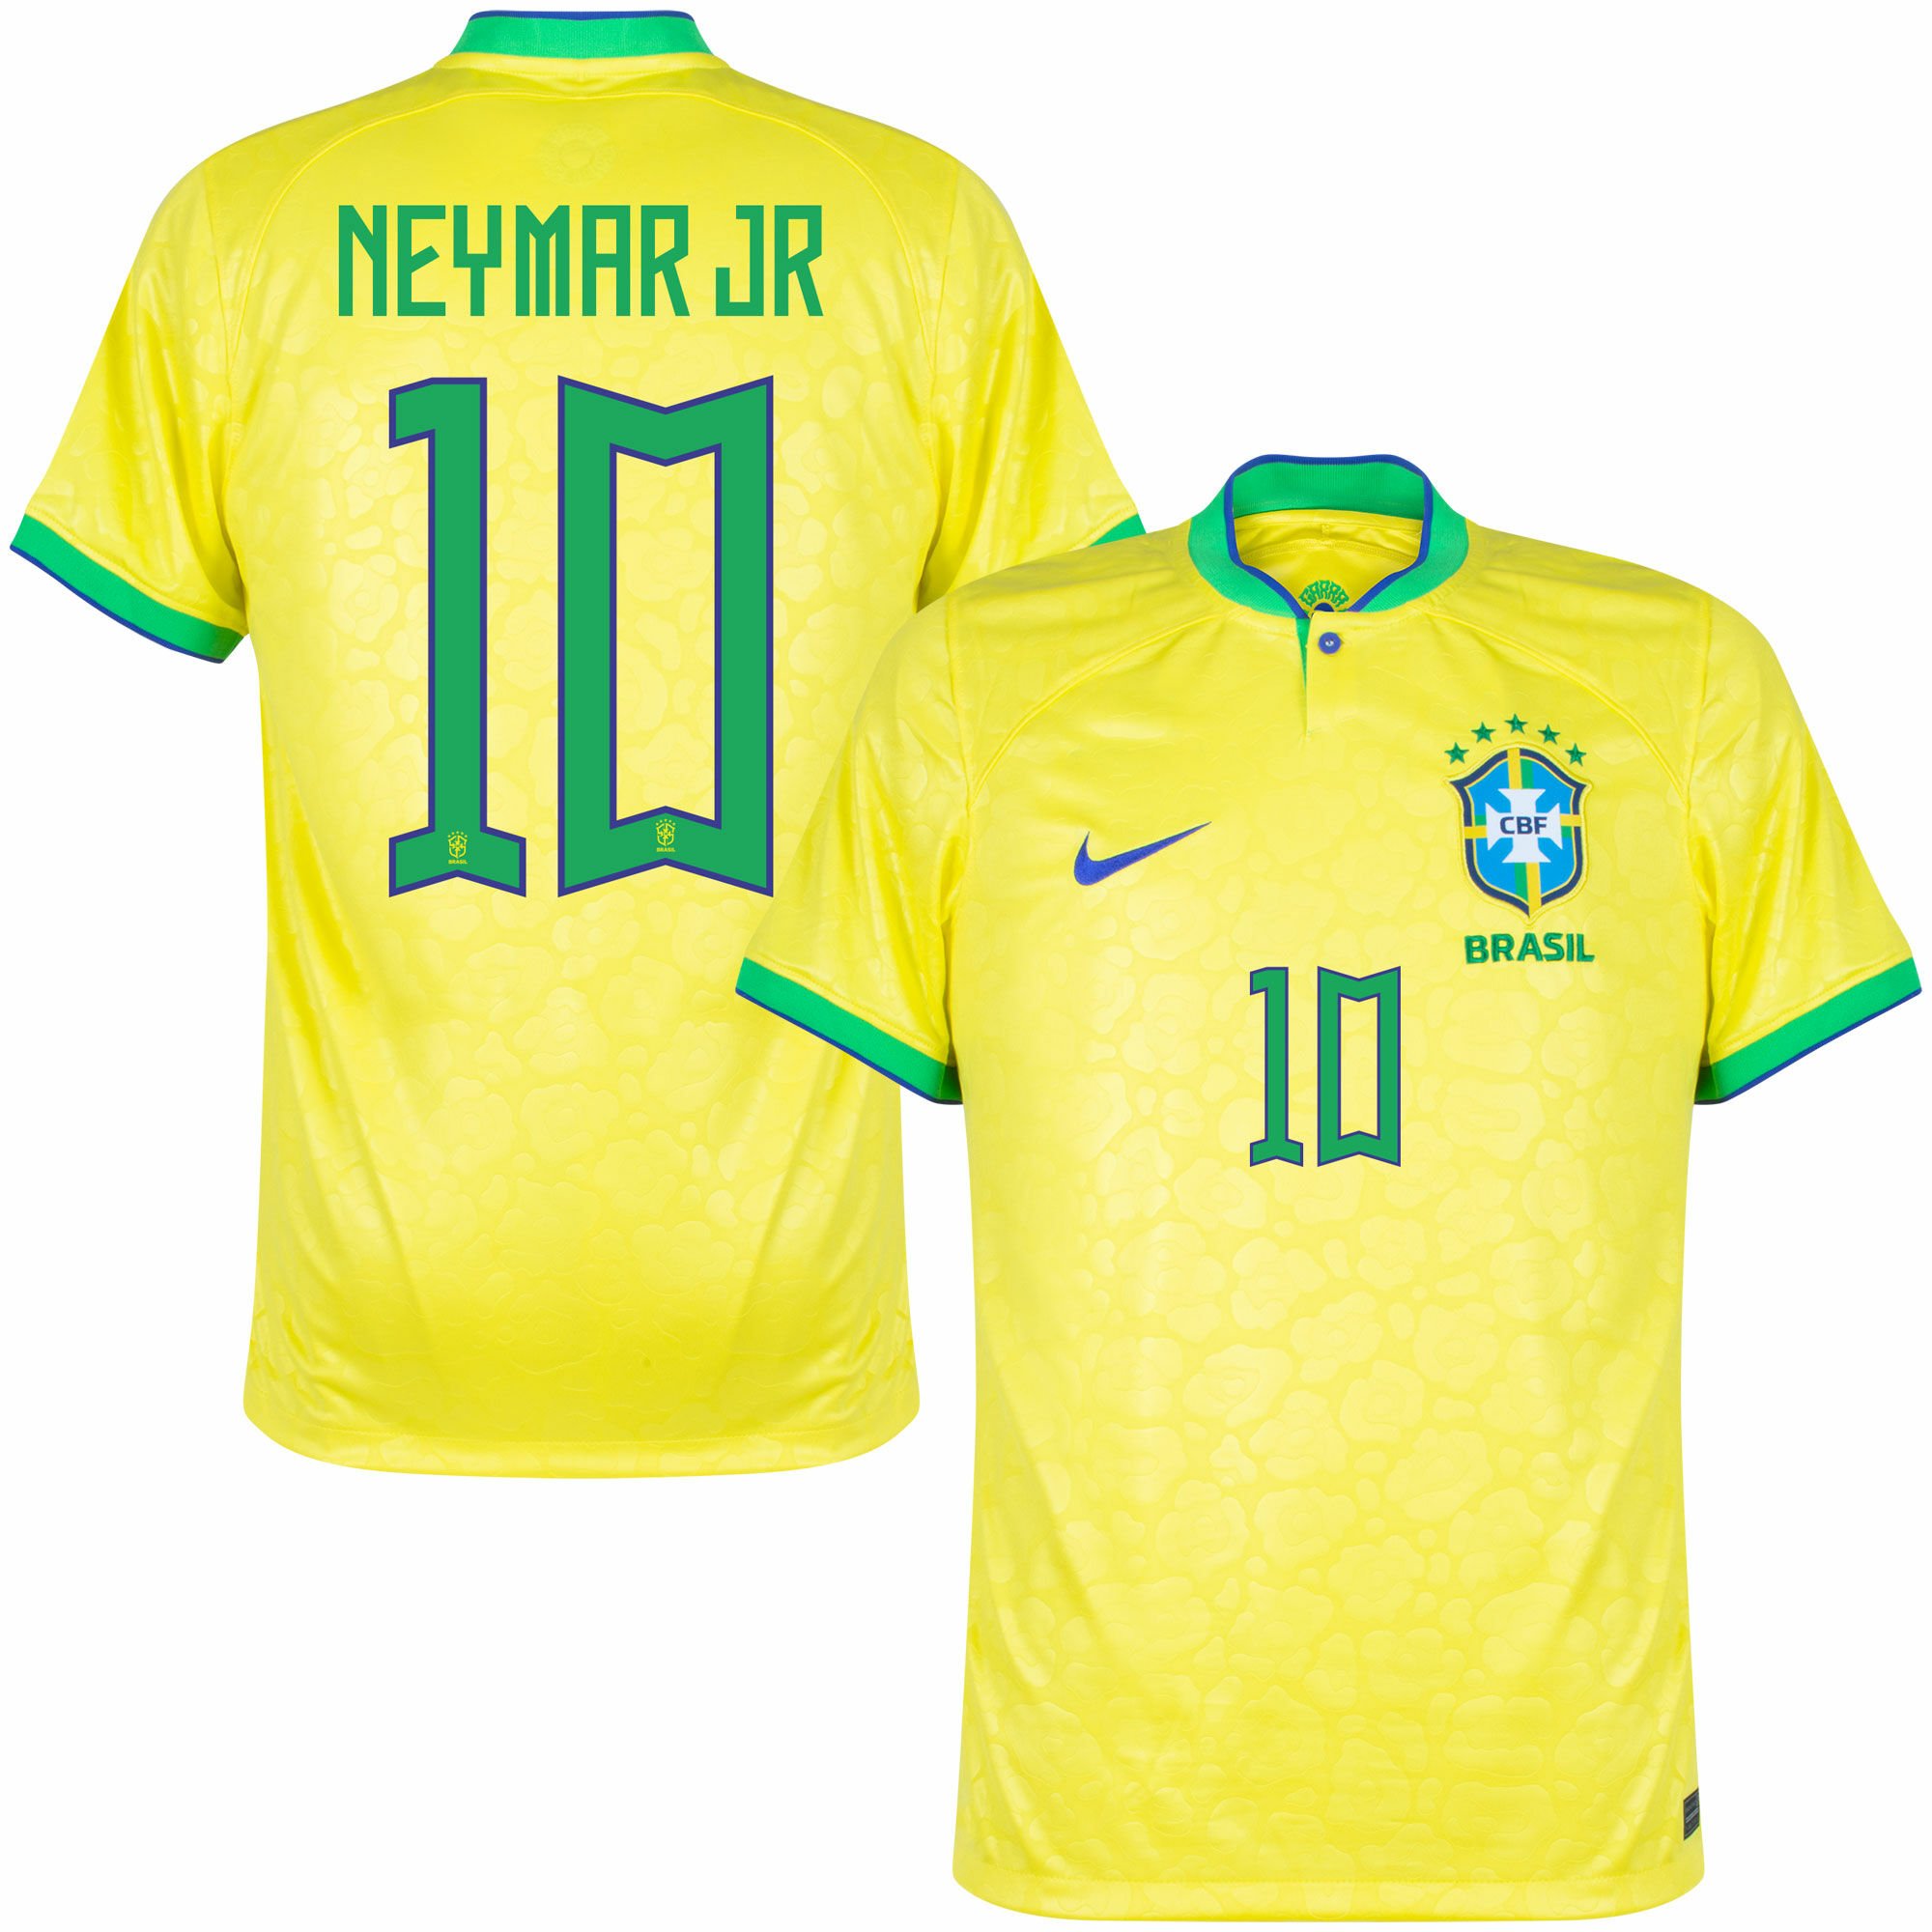 Brazílie - Dres fotbalový - oficiální potisk, žlutý, číslo 10, domácí, sezóna 2022/23, Neymar